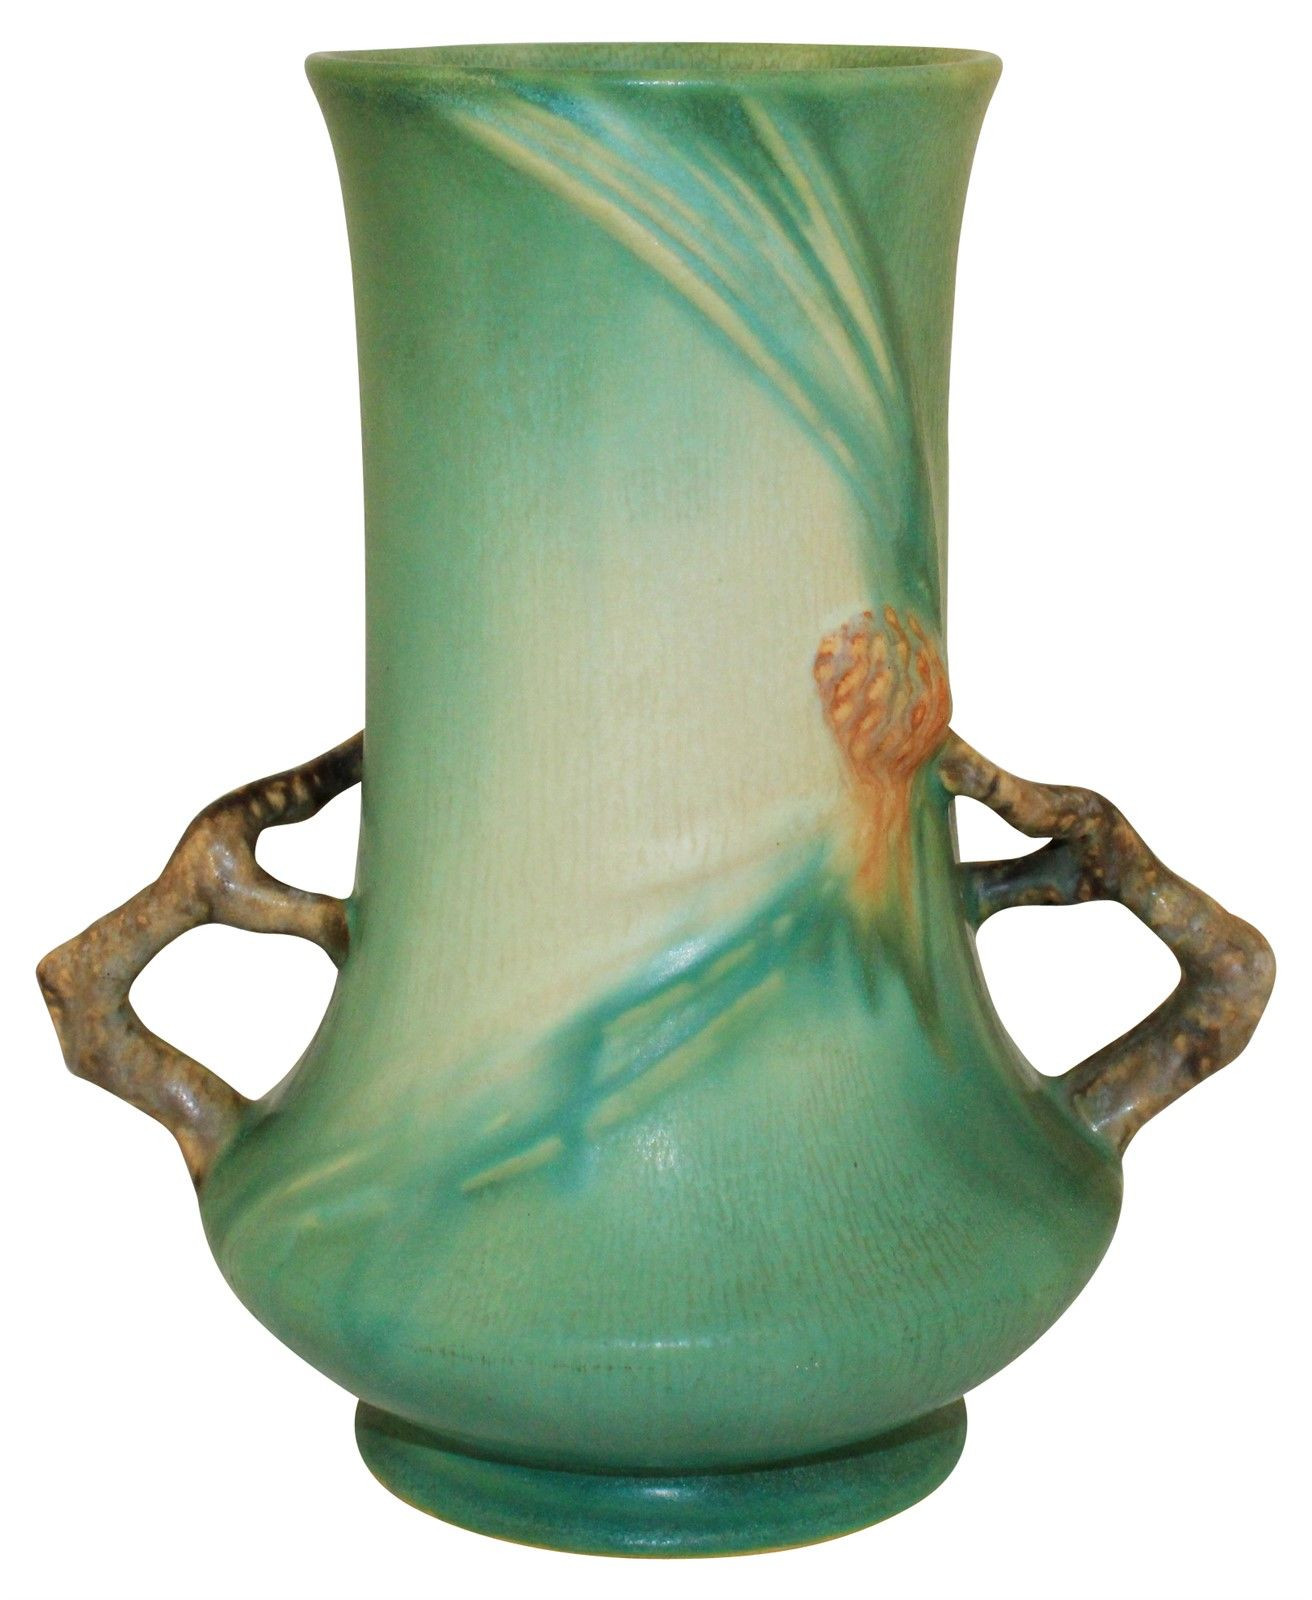 26 Wonderful Roseville Pottery Magnolia Vase 2024 free download roseville pottery magnolia vase of roseville pottery pine cone green vase 842 8 roseville pottery with regard to roseville pottery pine cone green vase 842 8